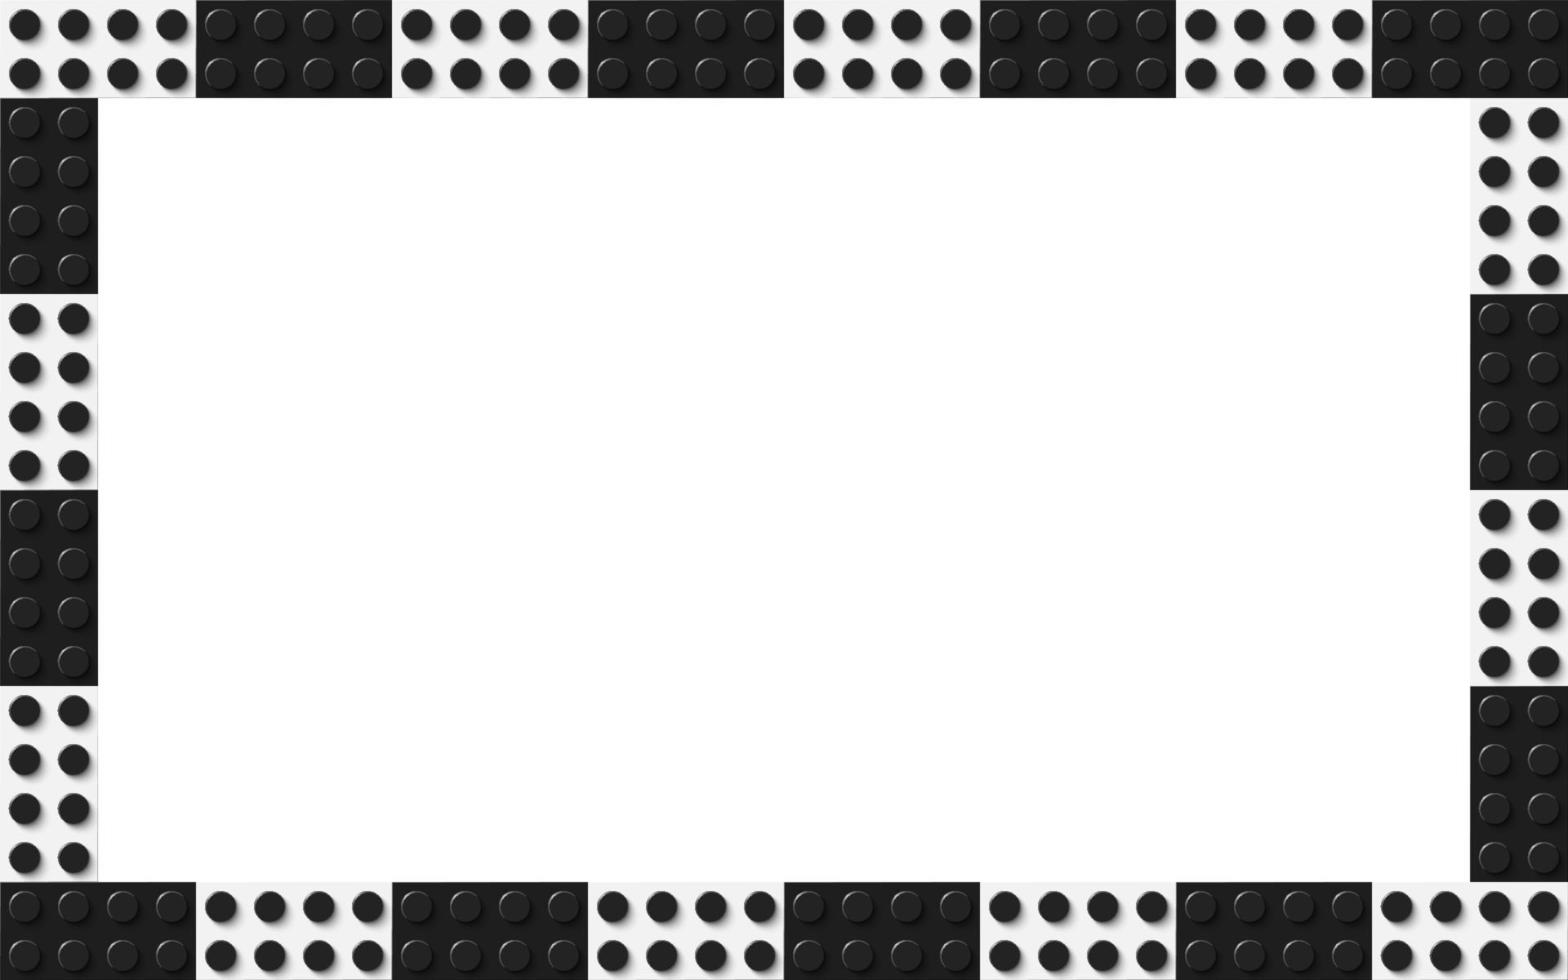 marco simple compuesto por bloques de juguete en blanco y negro. pancarta de ladrillo blanco y negro. fondo abstracto vectorial vector